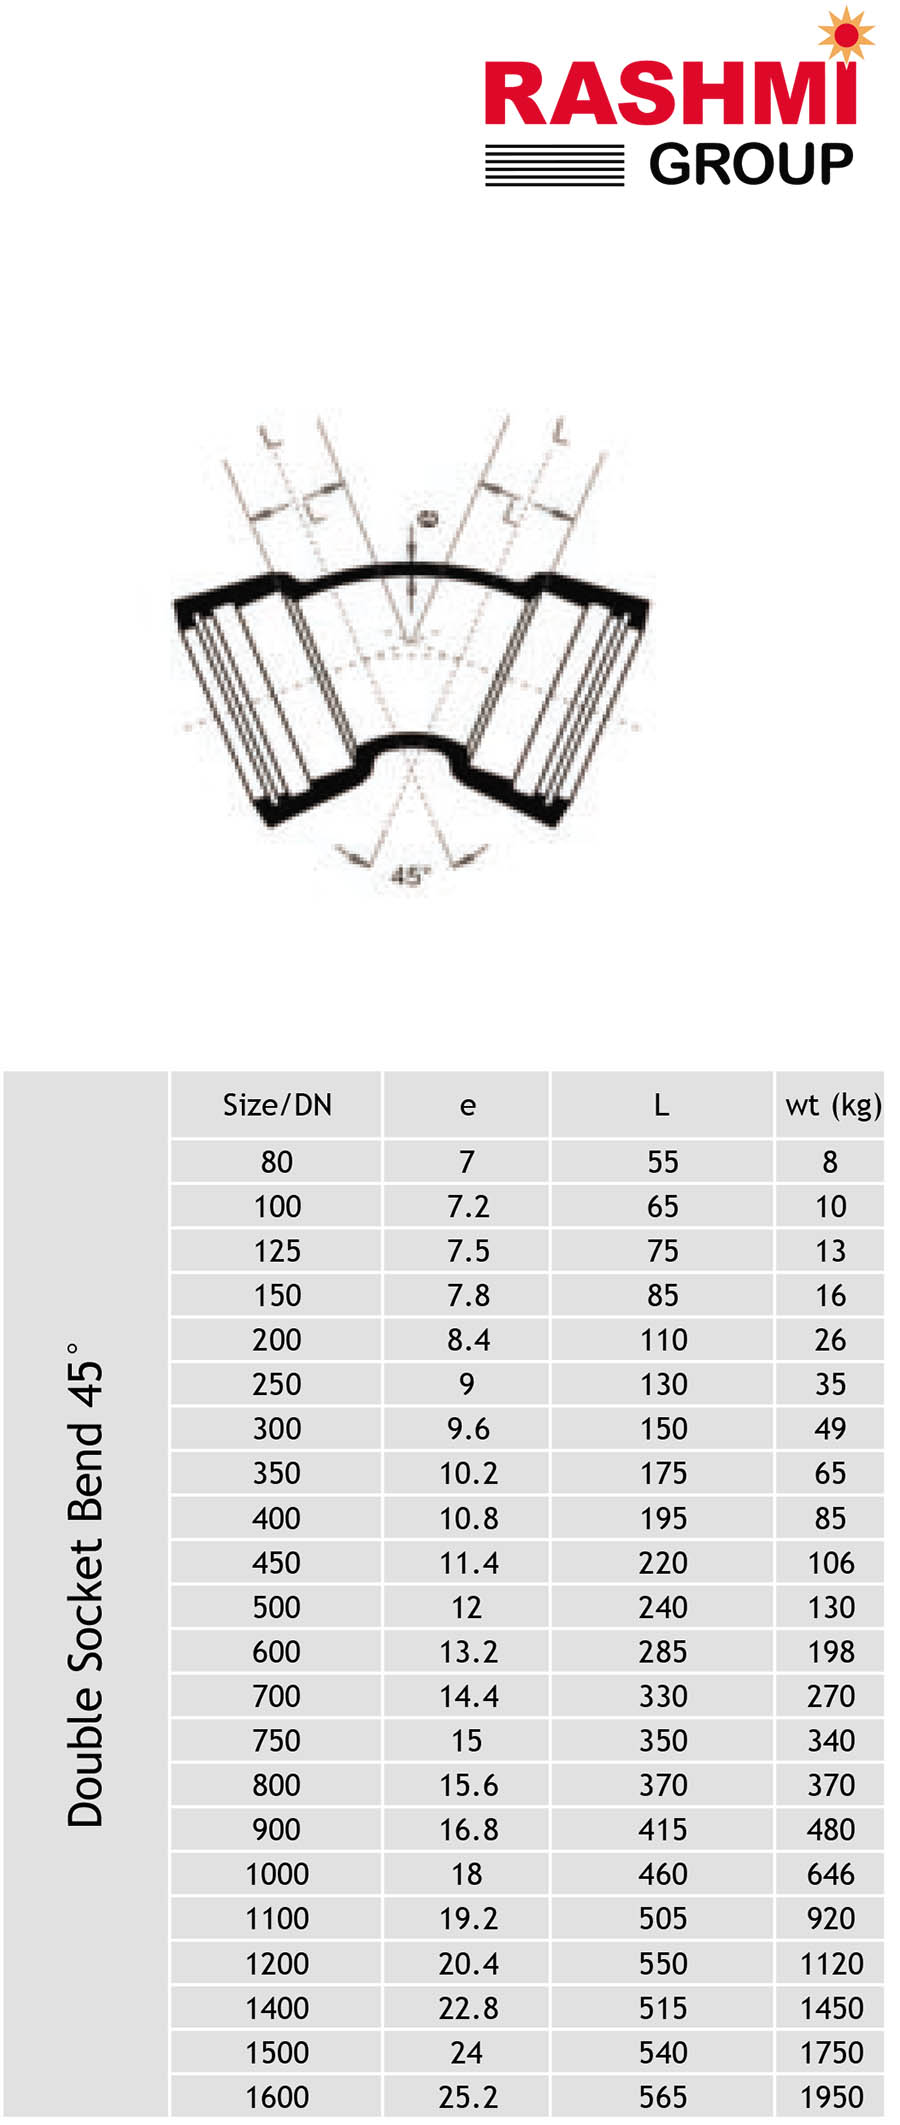 Bảng thông số kỹ thuật chi tiết của cút gang 45 độ - Hiệu Rashmi.